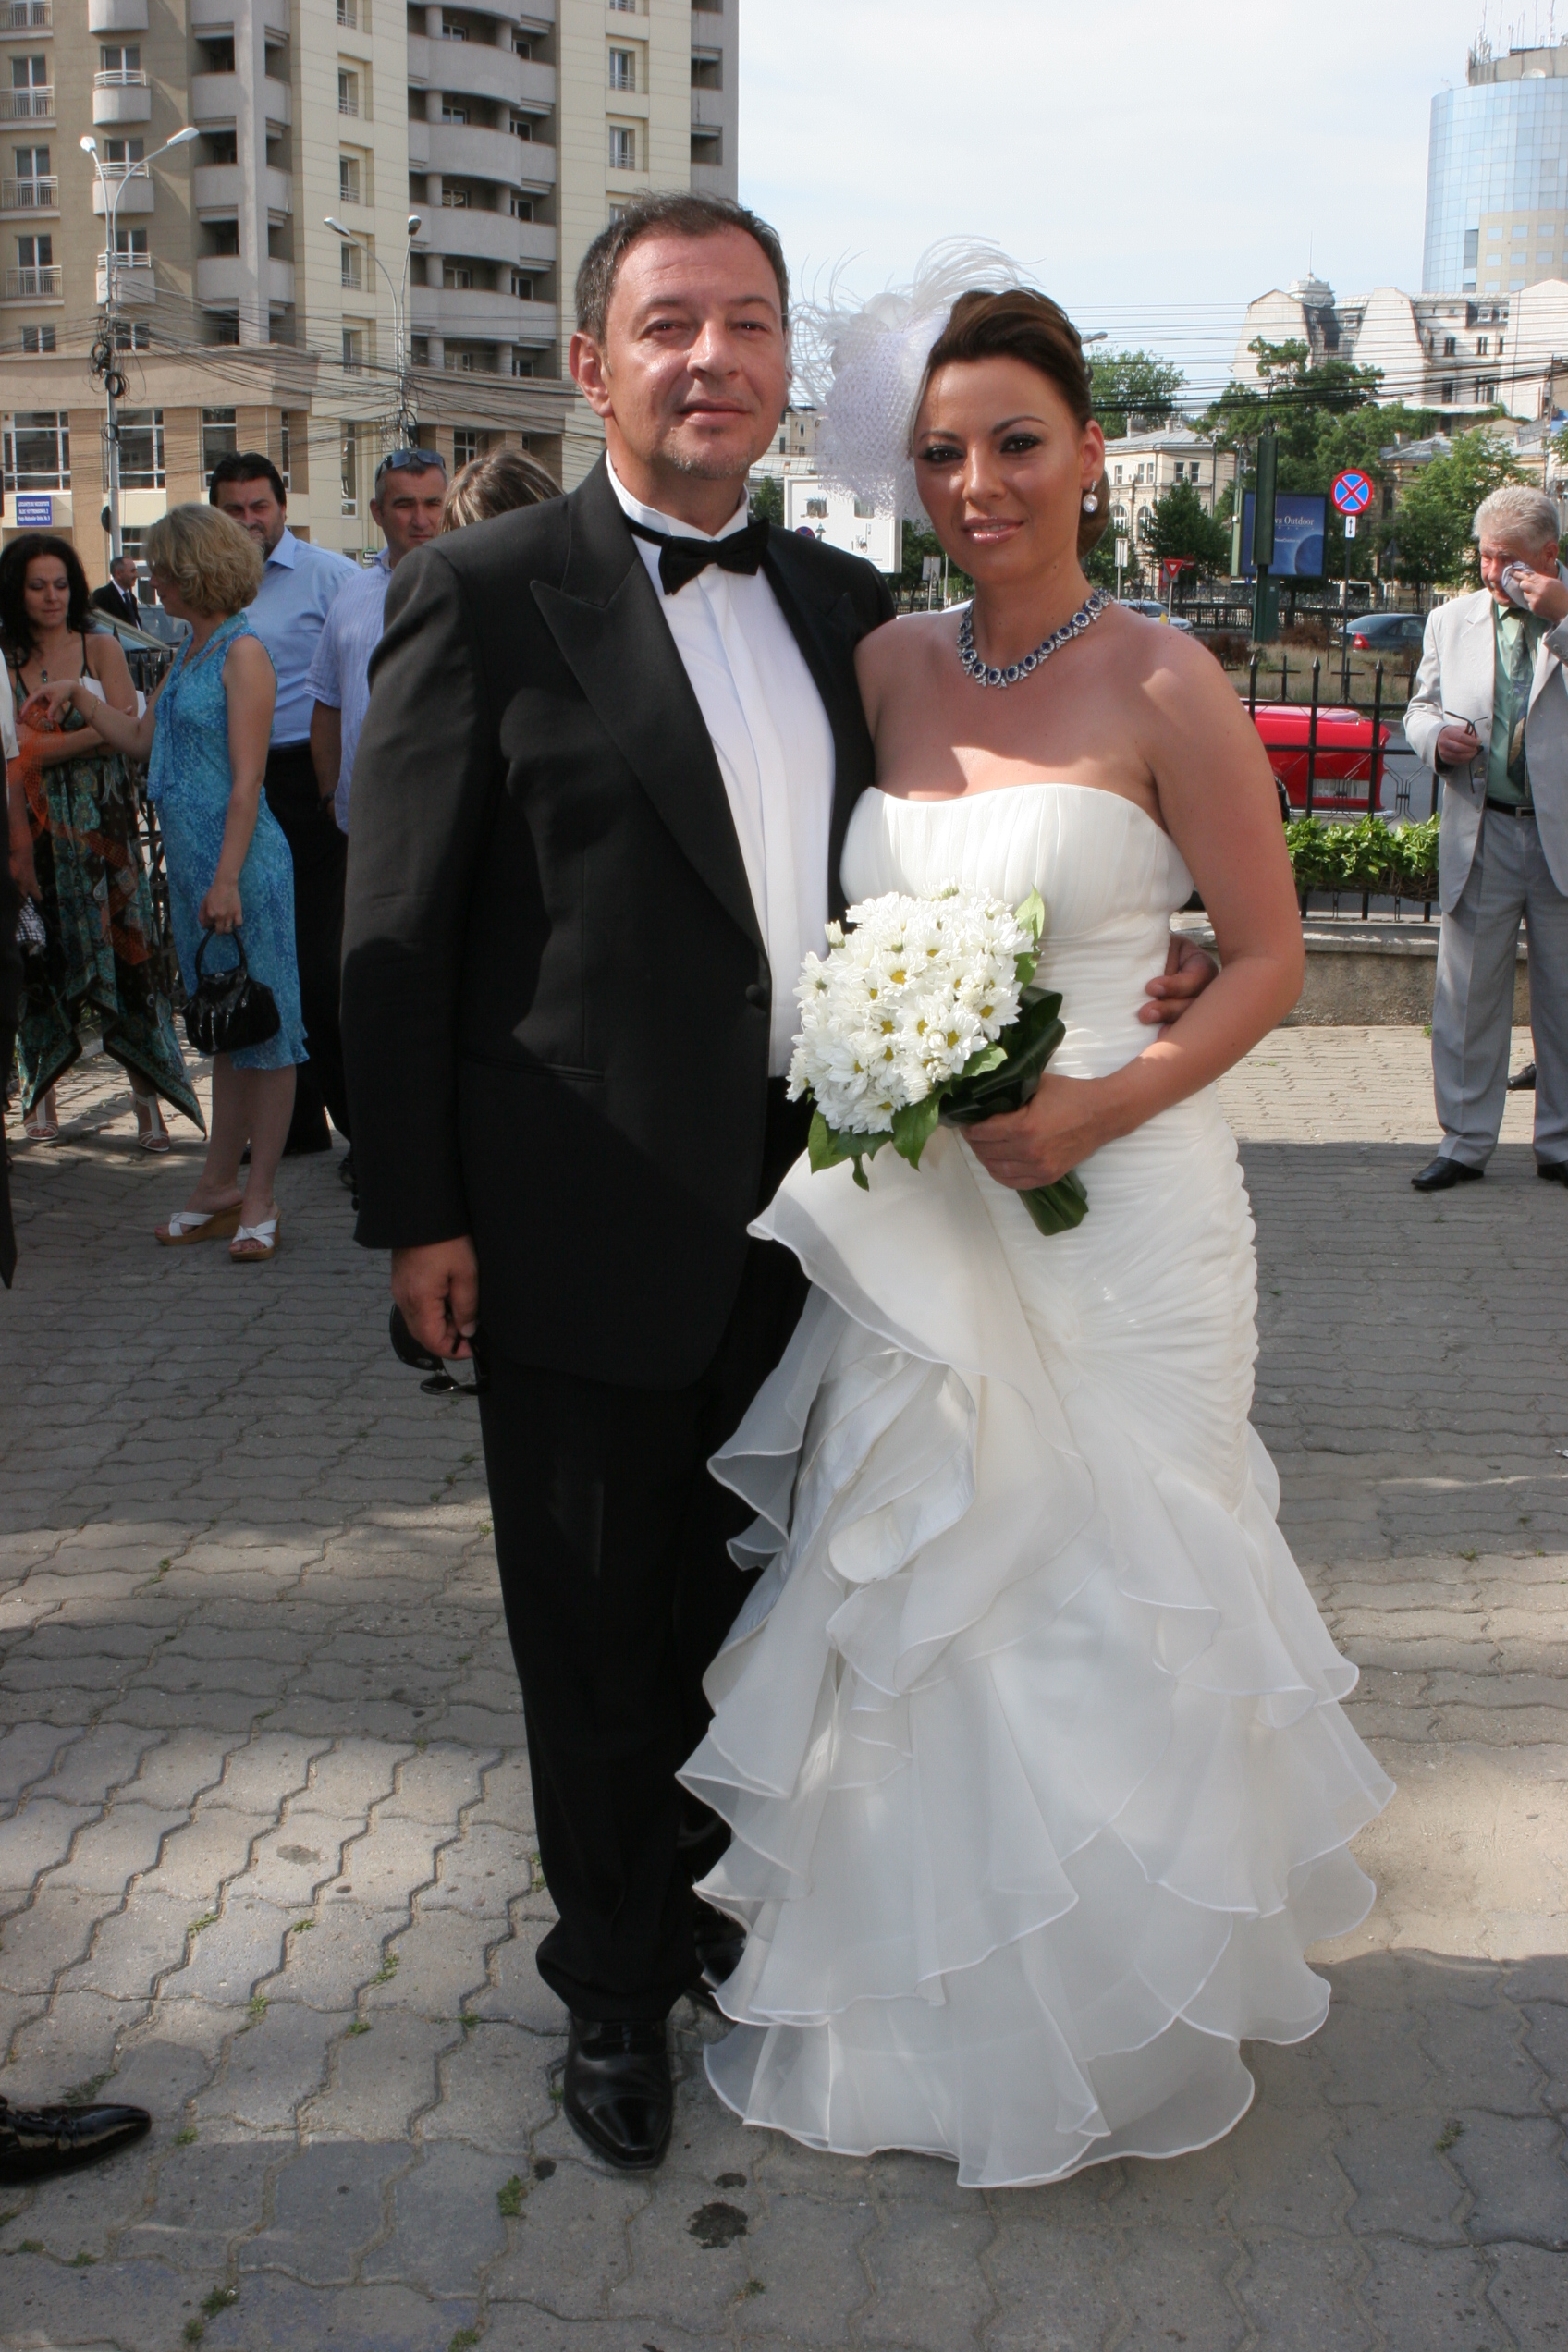 Bodo di Loredana s-au casatorit in 2009